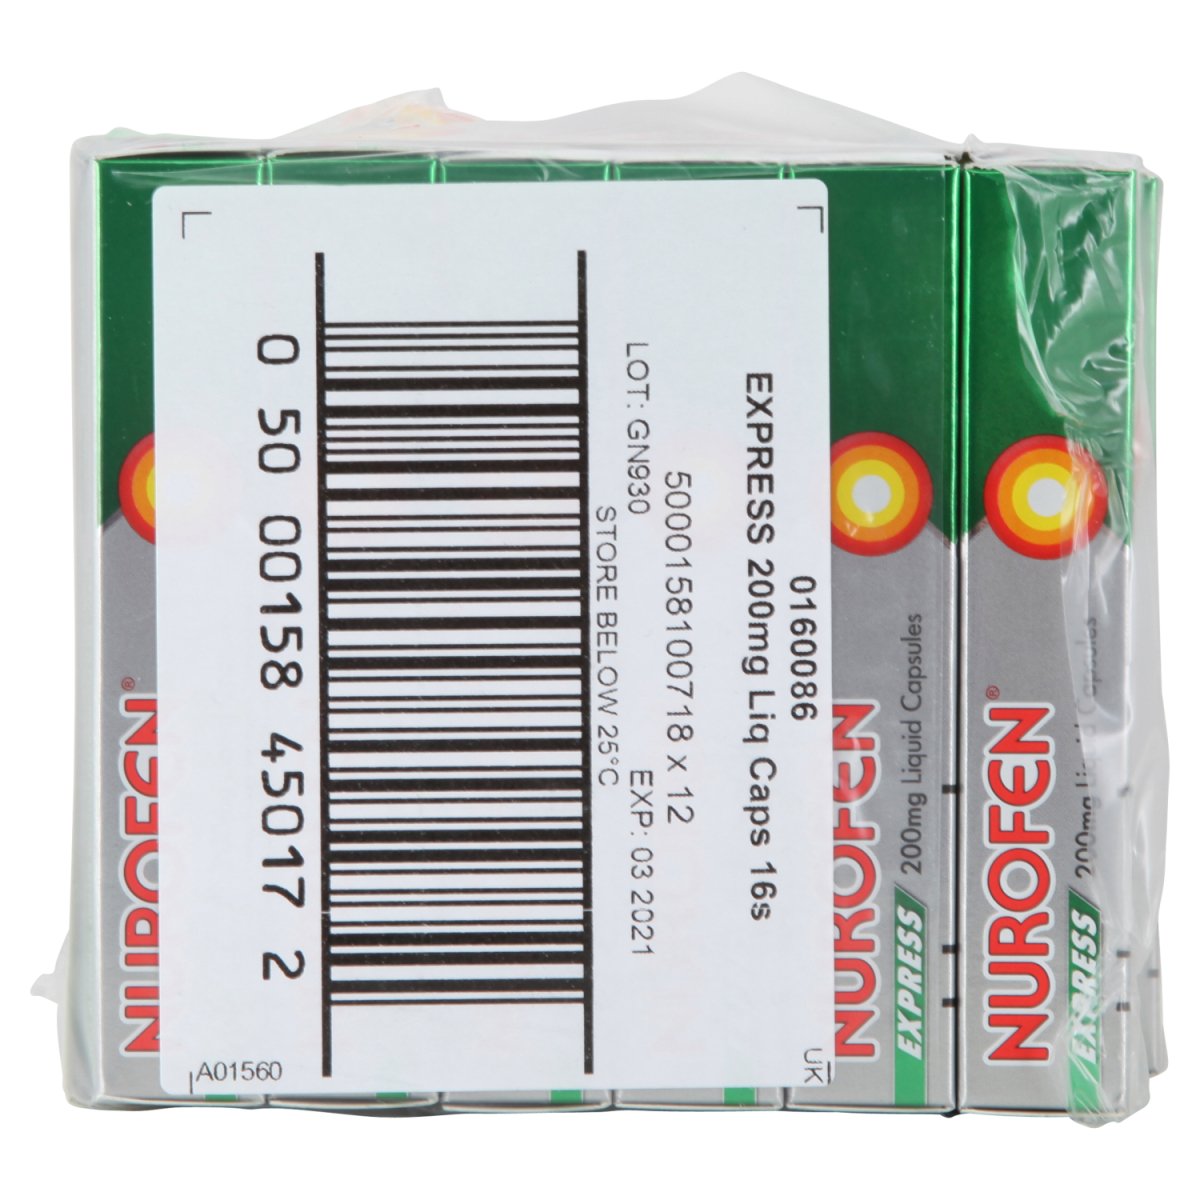 Nurofen Express Liquid Capsules 200mg (med) - Intamarque - Wholesale 5000158100718